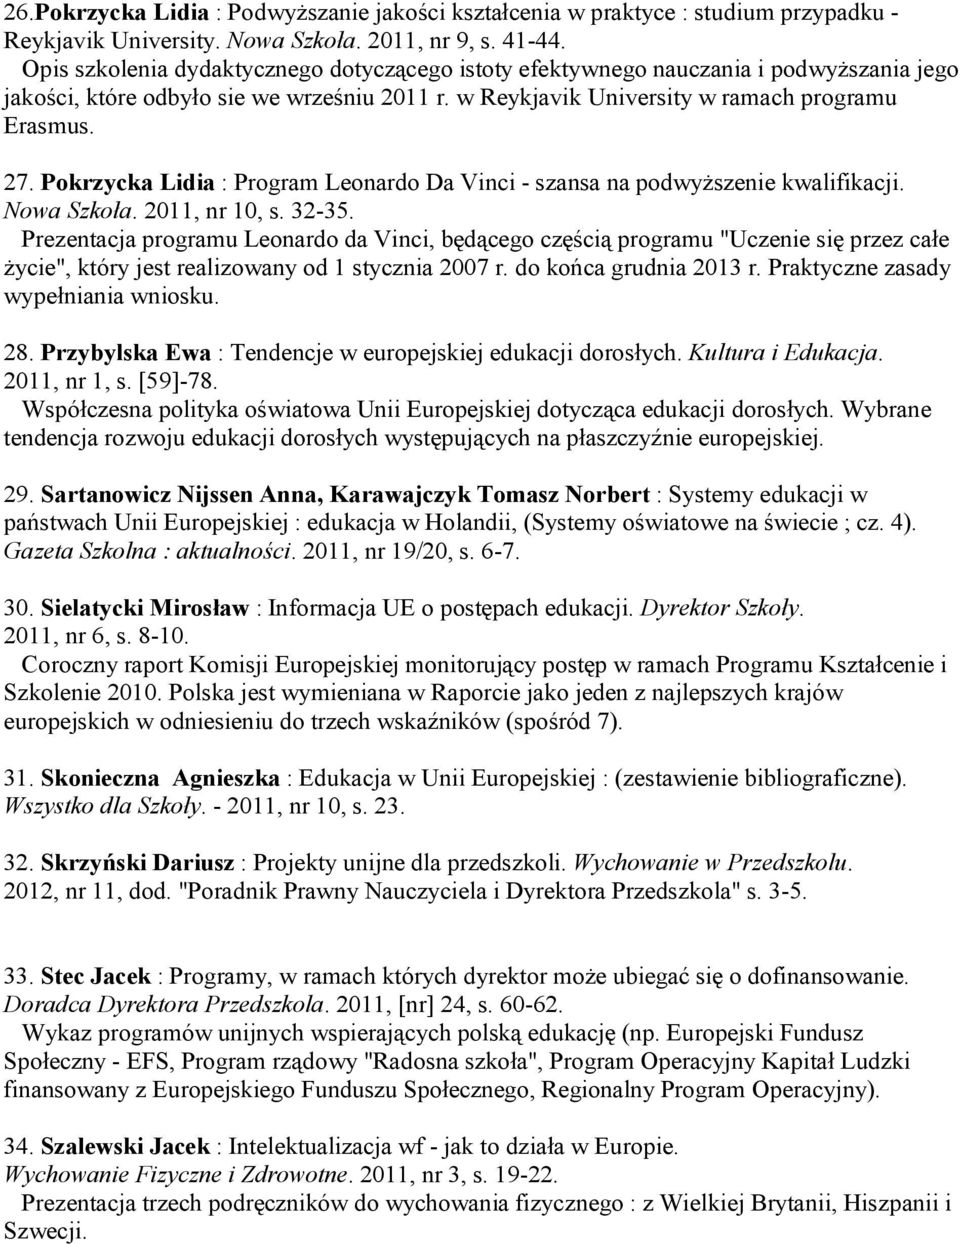 Pokrzycka Lidia : Program Leonardo Da Vinci - szansa na podwyższenie kwalifikacji. Nowa Szkoła. 2011, nr 10, s. 32-35.